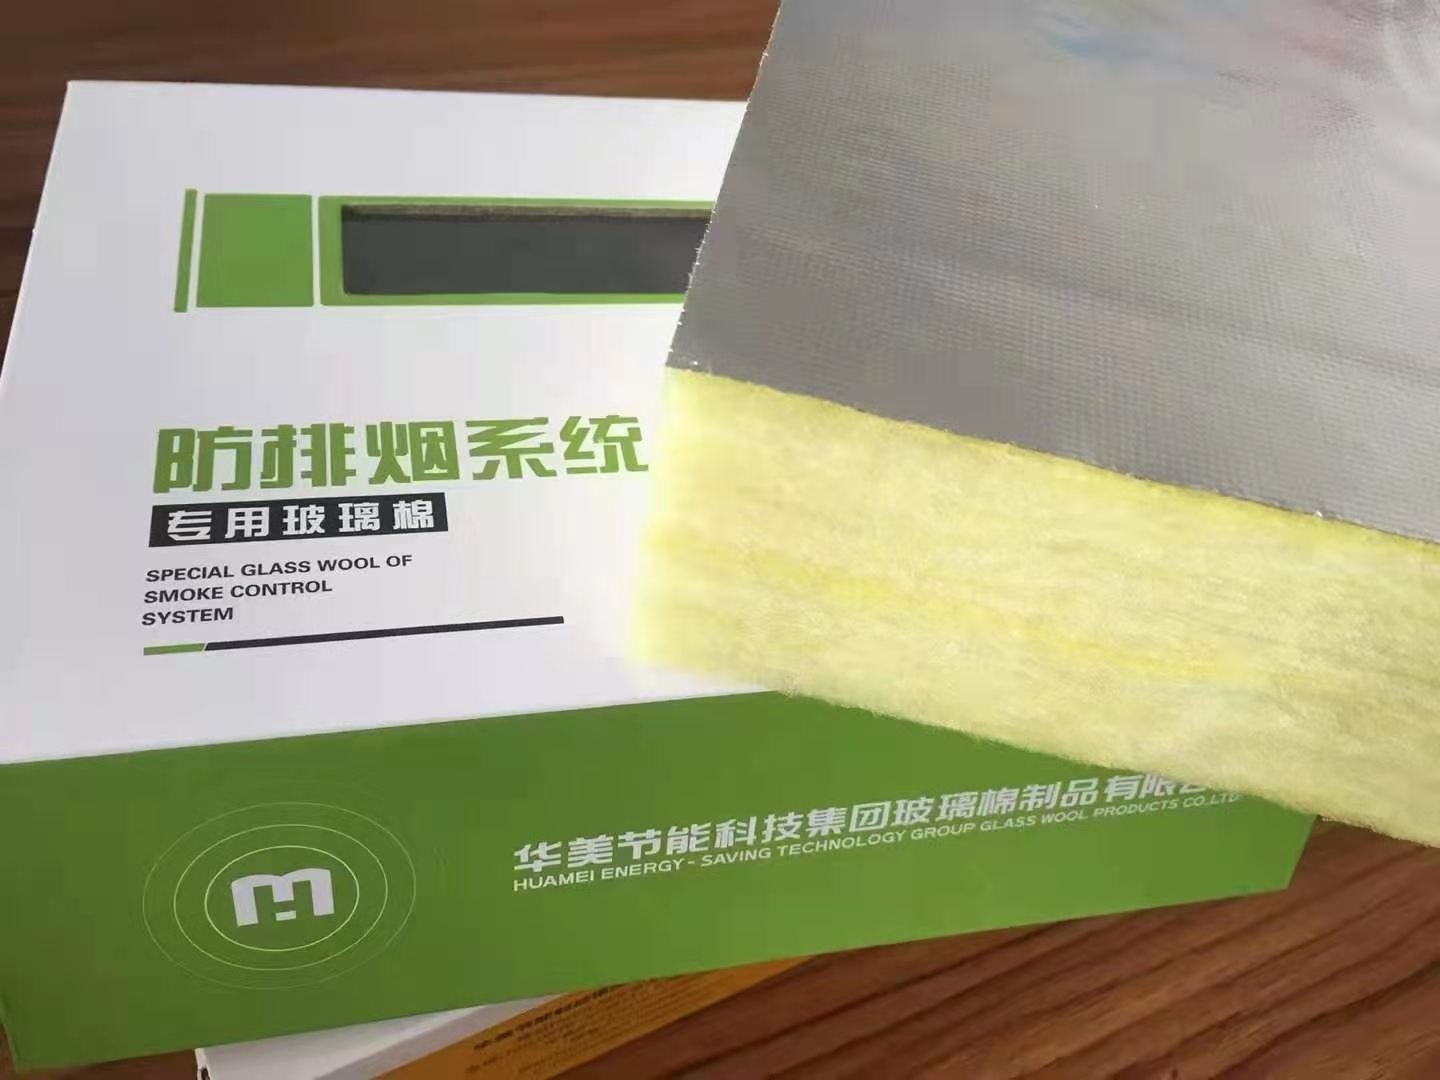 广东铝箔玻璃棉保温板华美金属管道绝热软包裹材料耐火极限1小时